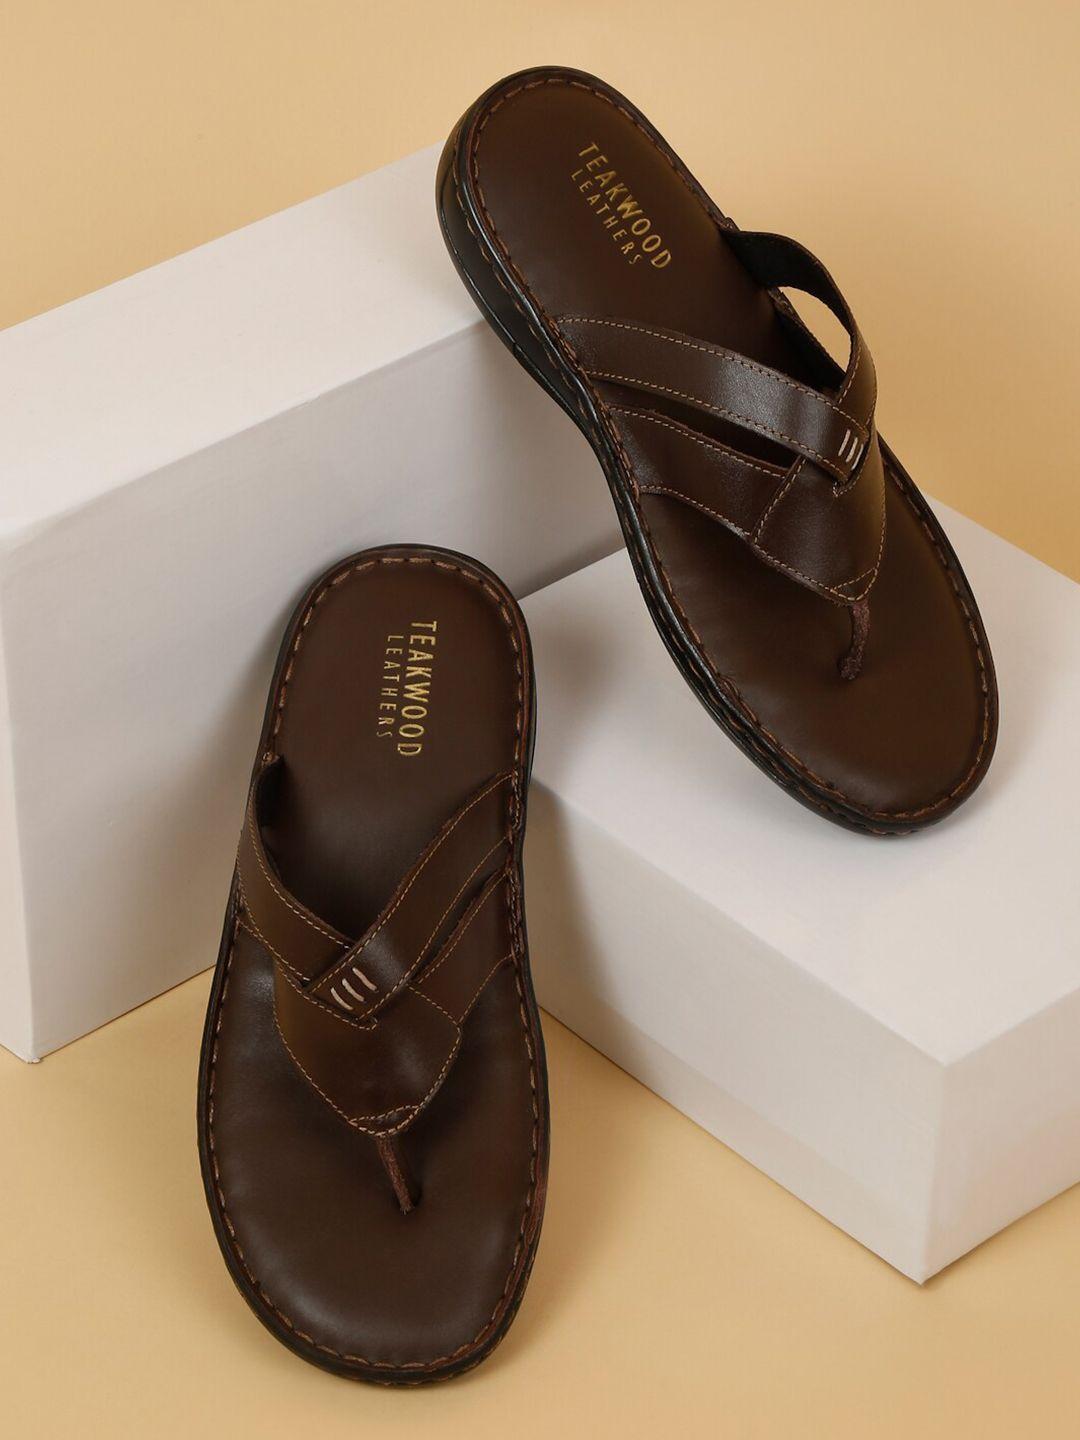 teakwood-leathers-men-textured-leather-comfort-sandals